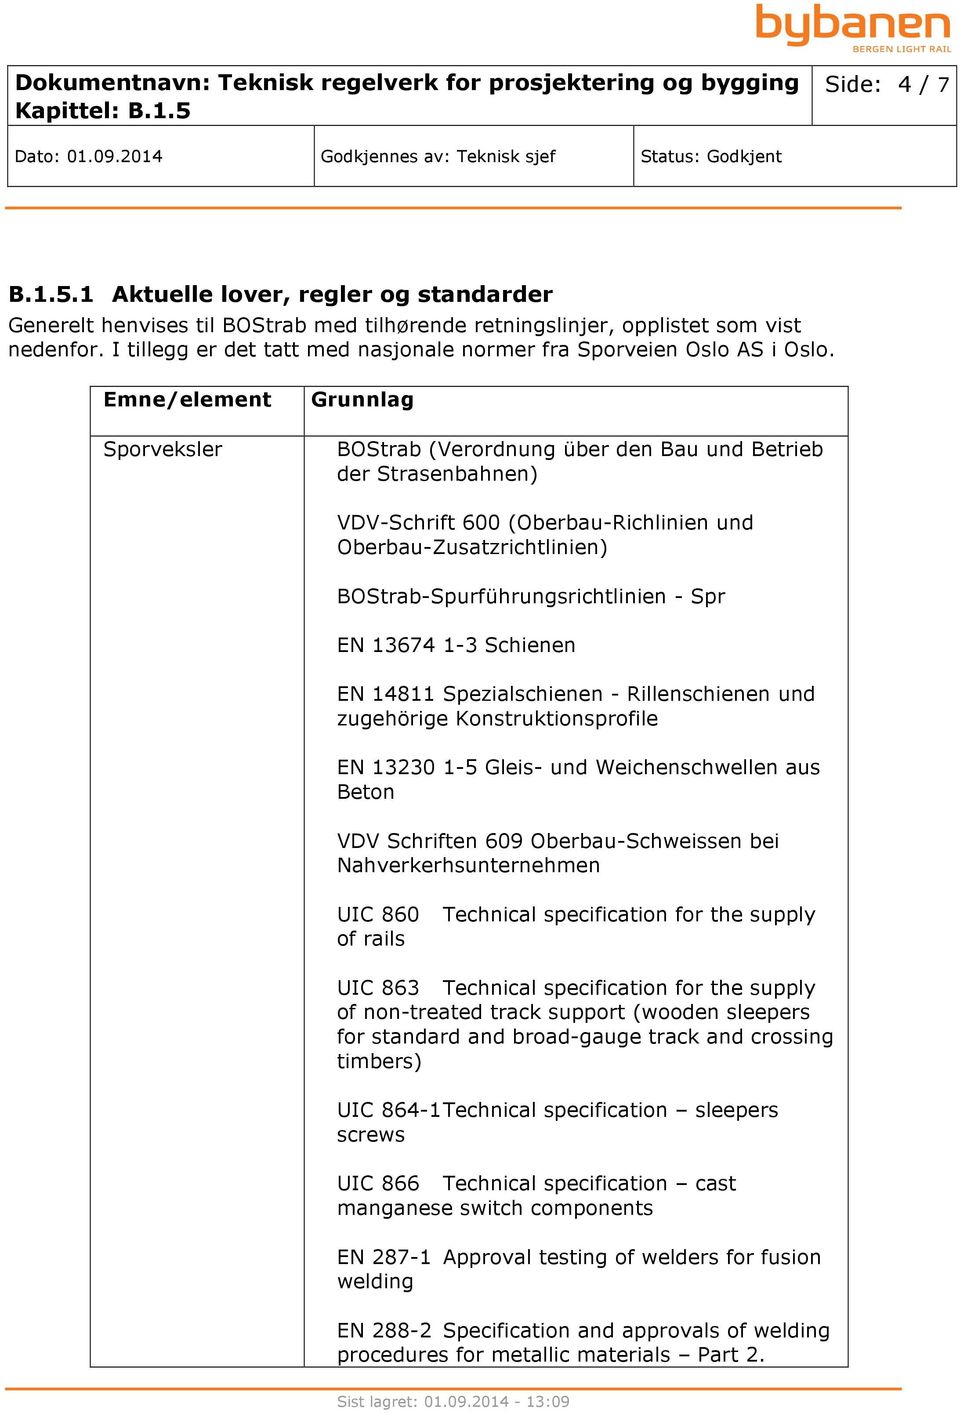 Emne/element Sporveksler Grunnlag BOStrab (Verordnung über den Bau und Betrieb der Strasenbahnen) VDV-Schrift 600 (Oberbau-Richlinien und Oberbau-Zusatzrichtlinien) BOStrab-Spurführungsrichtlinien -